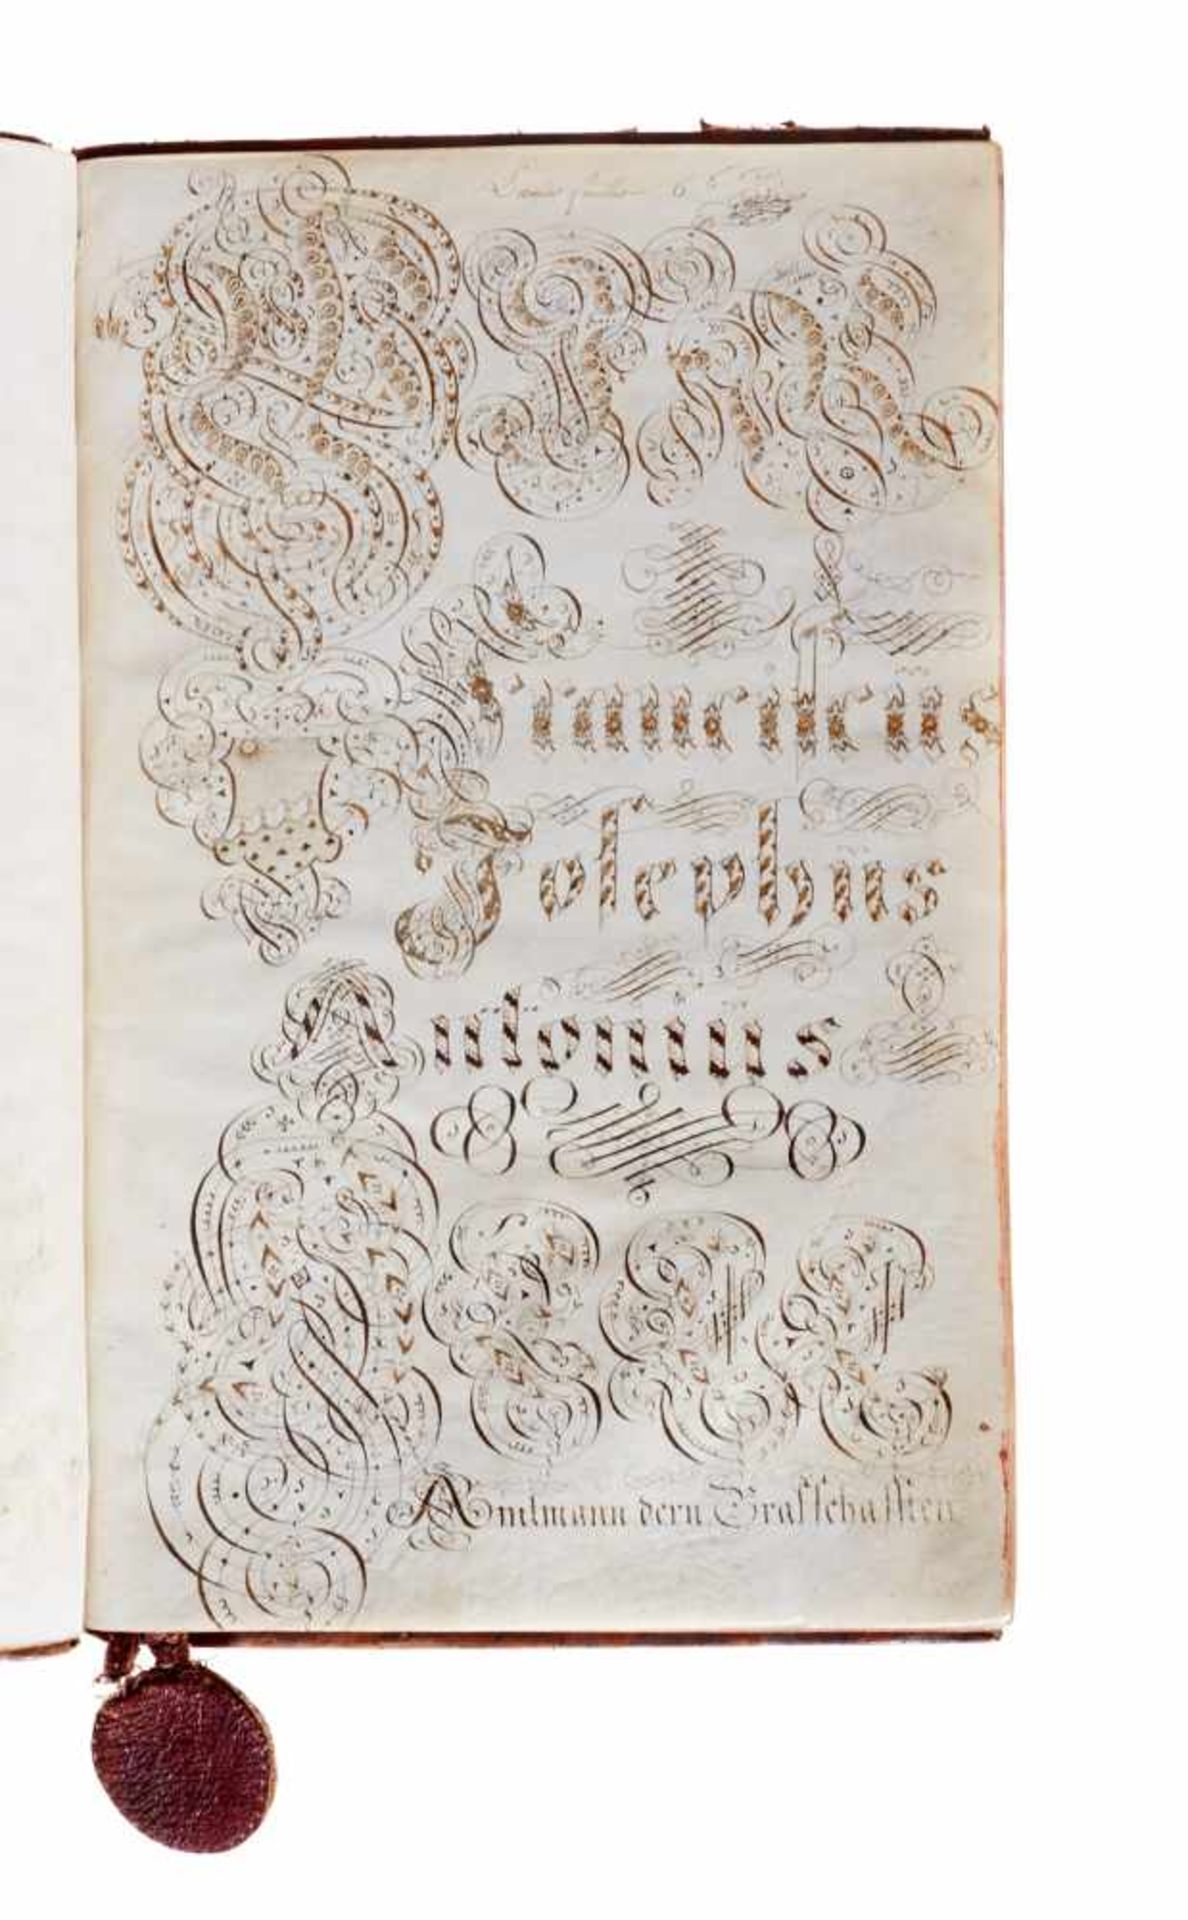 "St. Johannser Commenthurey Terain von Basel zu Helfrantzkirch De Anno 1770".Deutsche Handschrift - Bild 3 aus 6